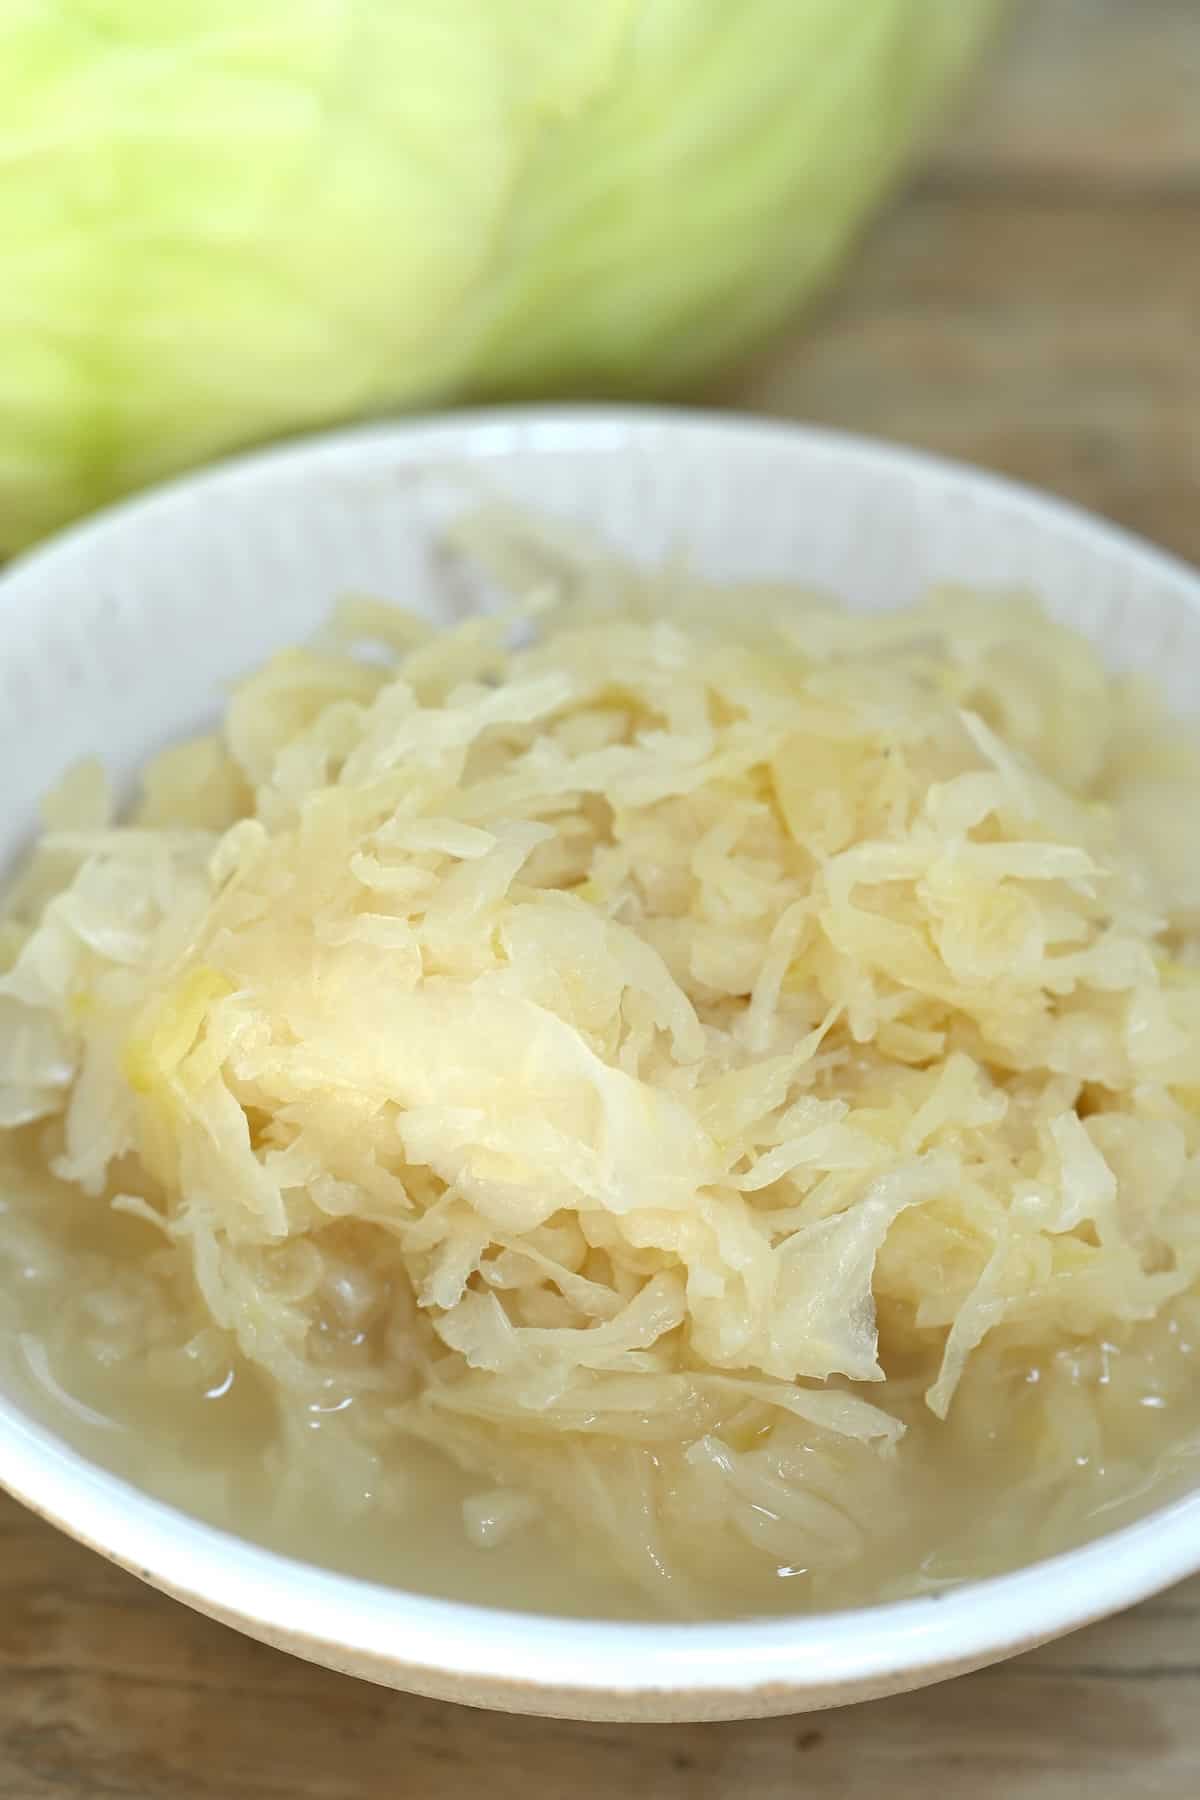 Homemade sauerkraut in a bowl